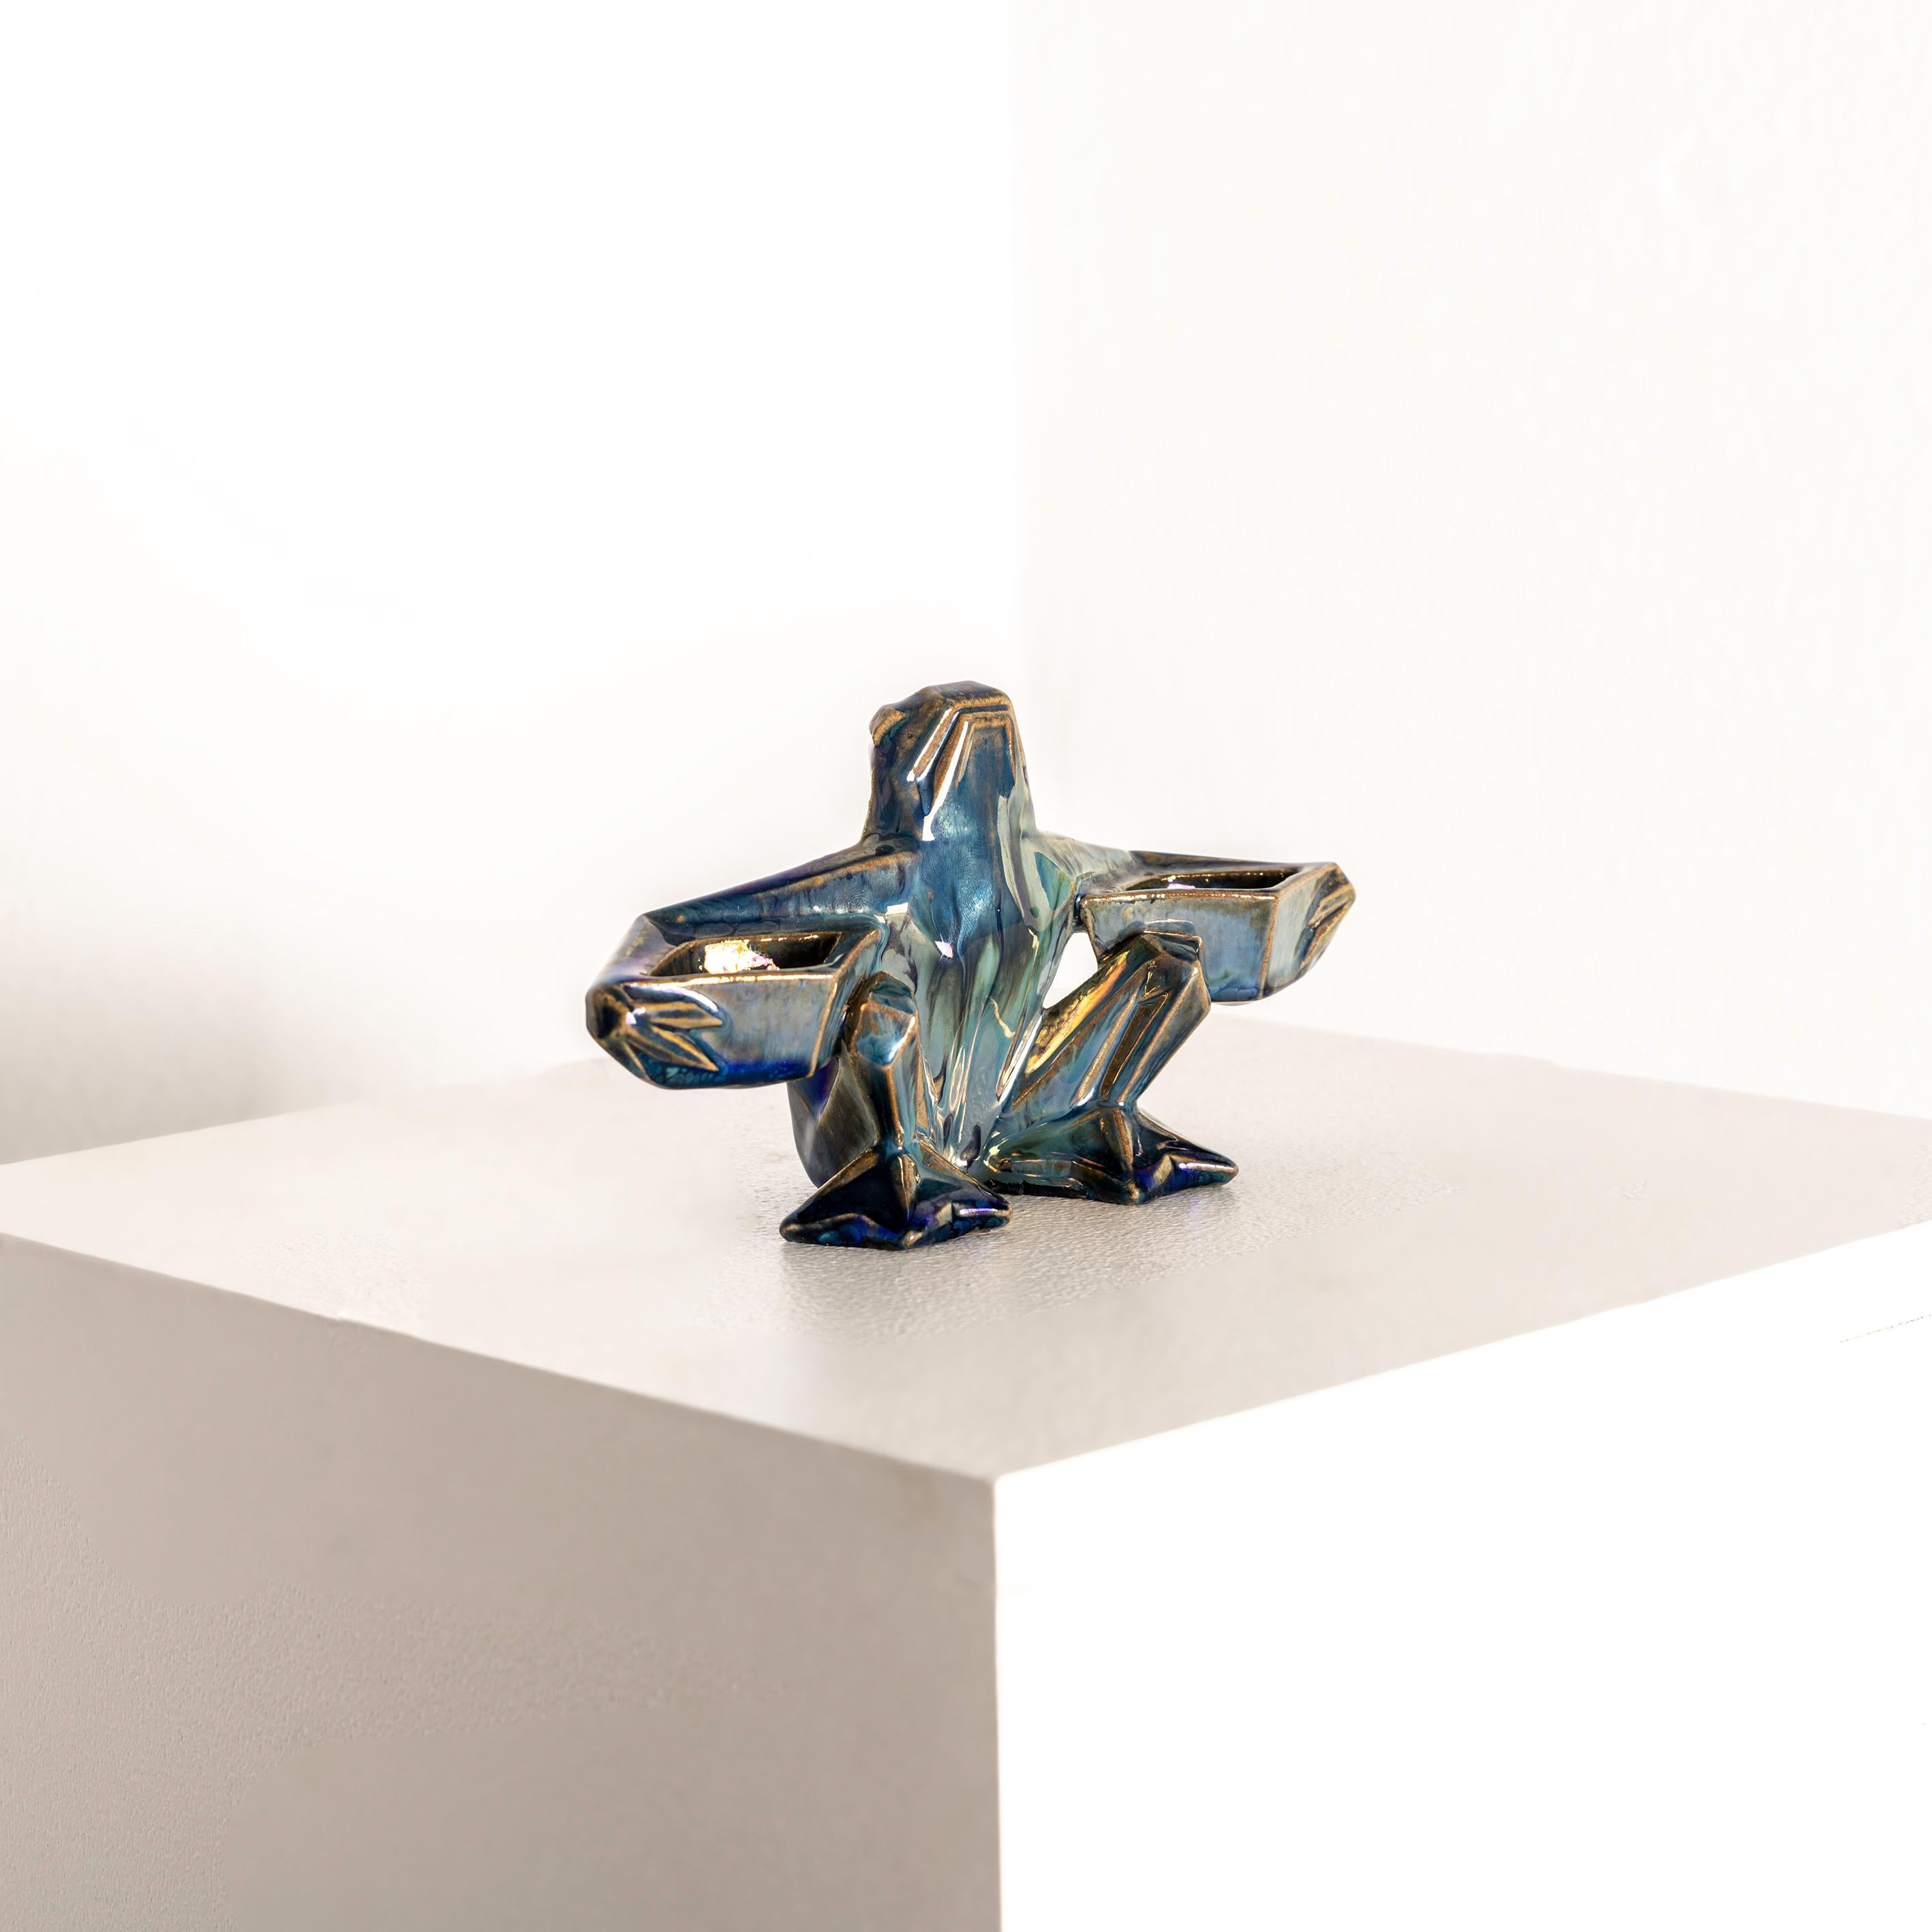 Der Salzkeller von Alphonse Cytere, ein Meisterwerk des Art déco um 1930, besticht durch seine zeitlose Ausstrahlung und sein fesselndes Design. Dieser Salzstreuer aus der Blütezeit des Art déco verkörpert die Essenz einer Epoche, die von